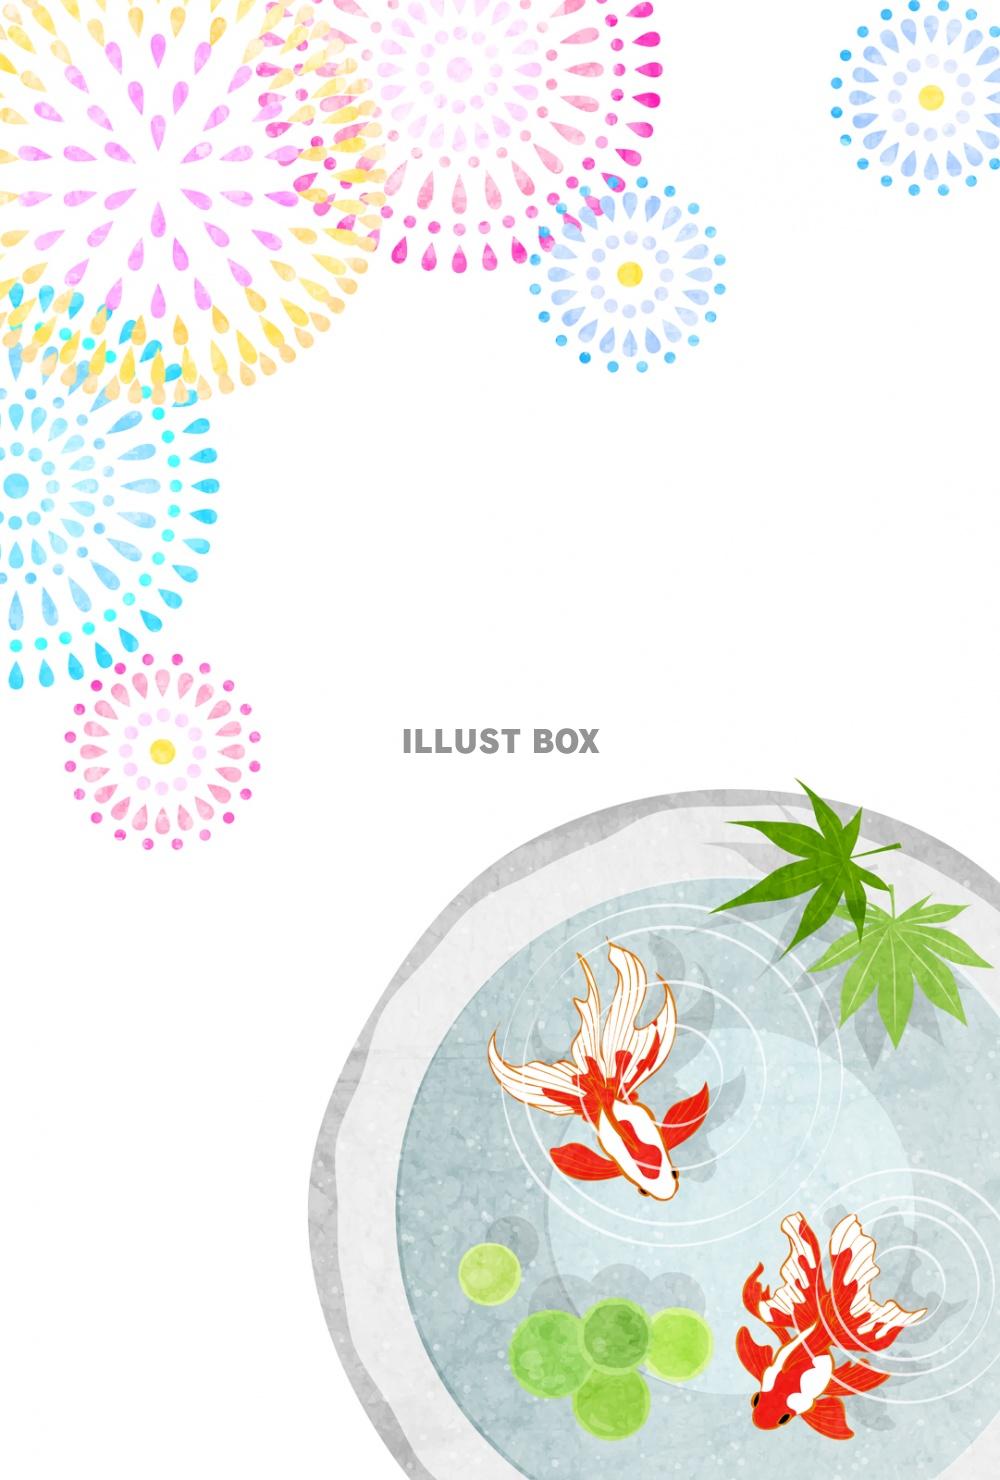 石鉢金魚と花火の夏祭りはがきタテ